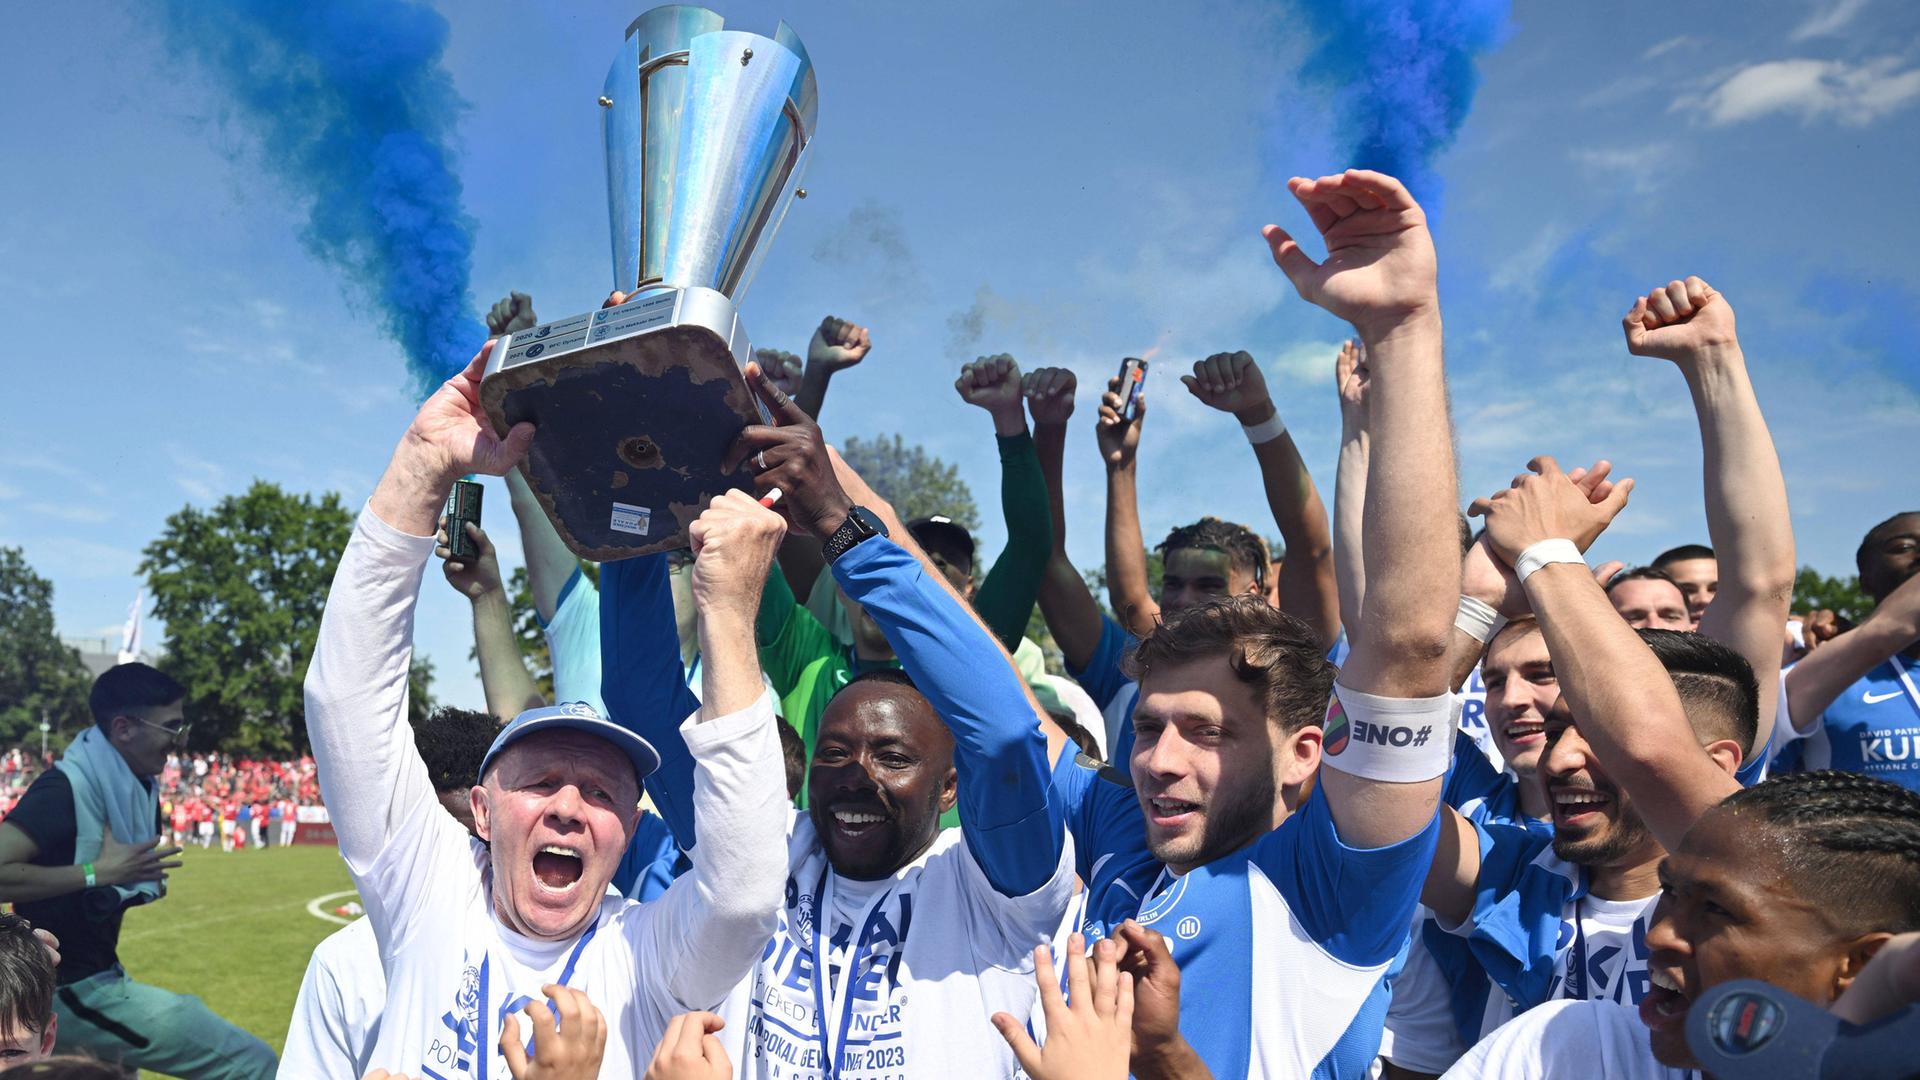 Mehrere Fußball-Spieler jubeln nach einem Sieg gemeinsam mit Fans und ihrem Trainer auf dem Spielfeld und halten einen Pokal in die Höhe.